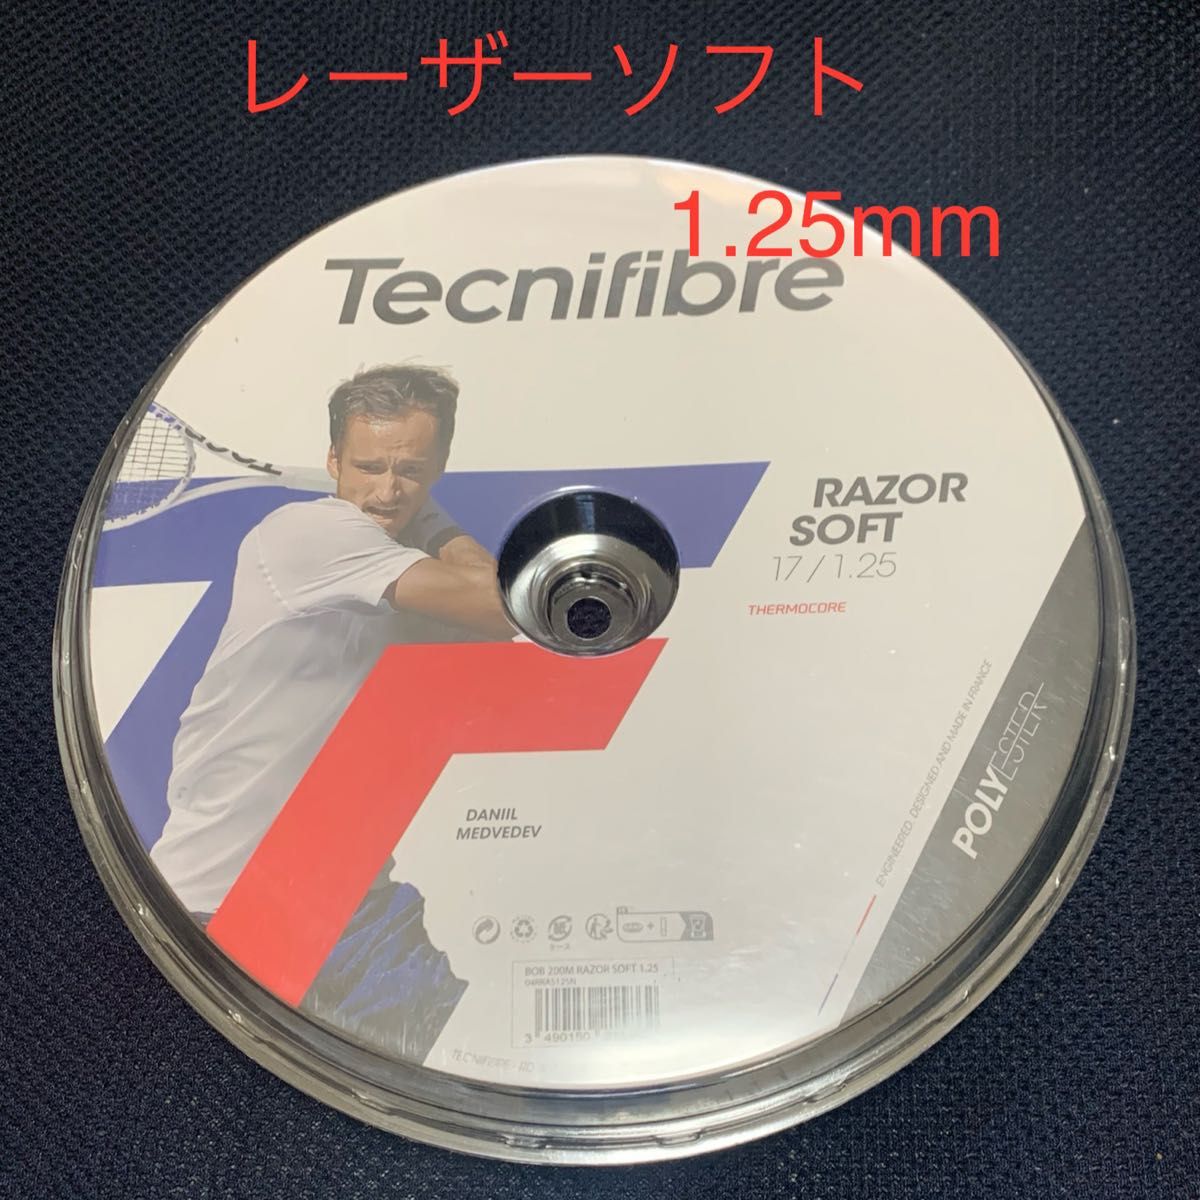 テクニファイバー レーザーソフト1.25mm(1張り分)